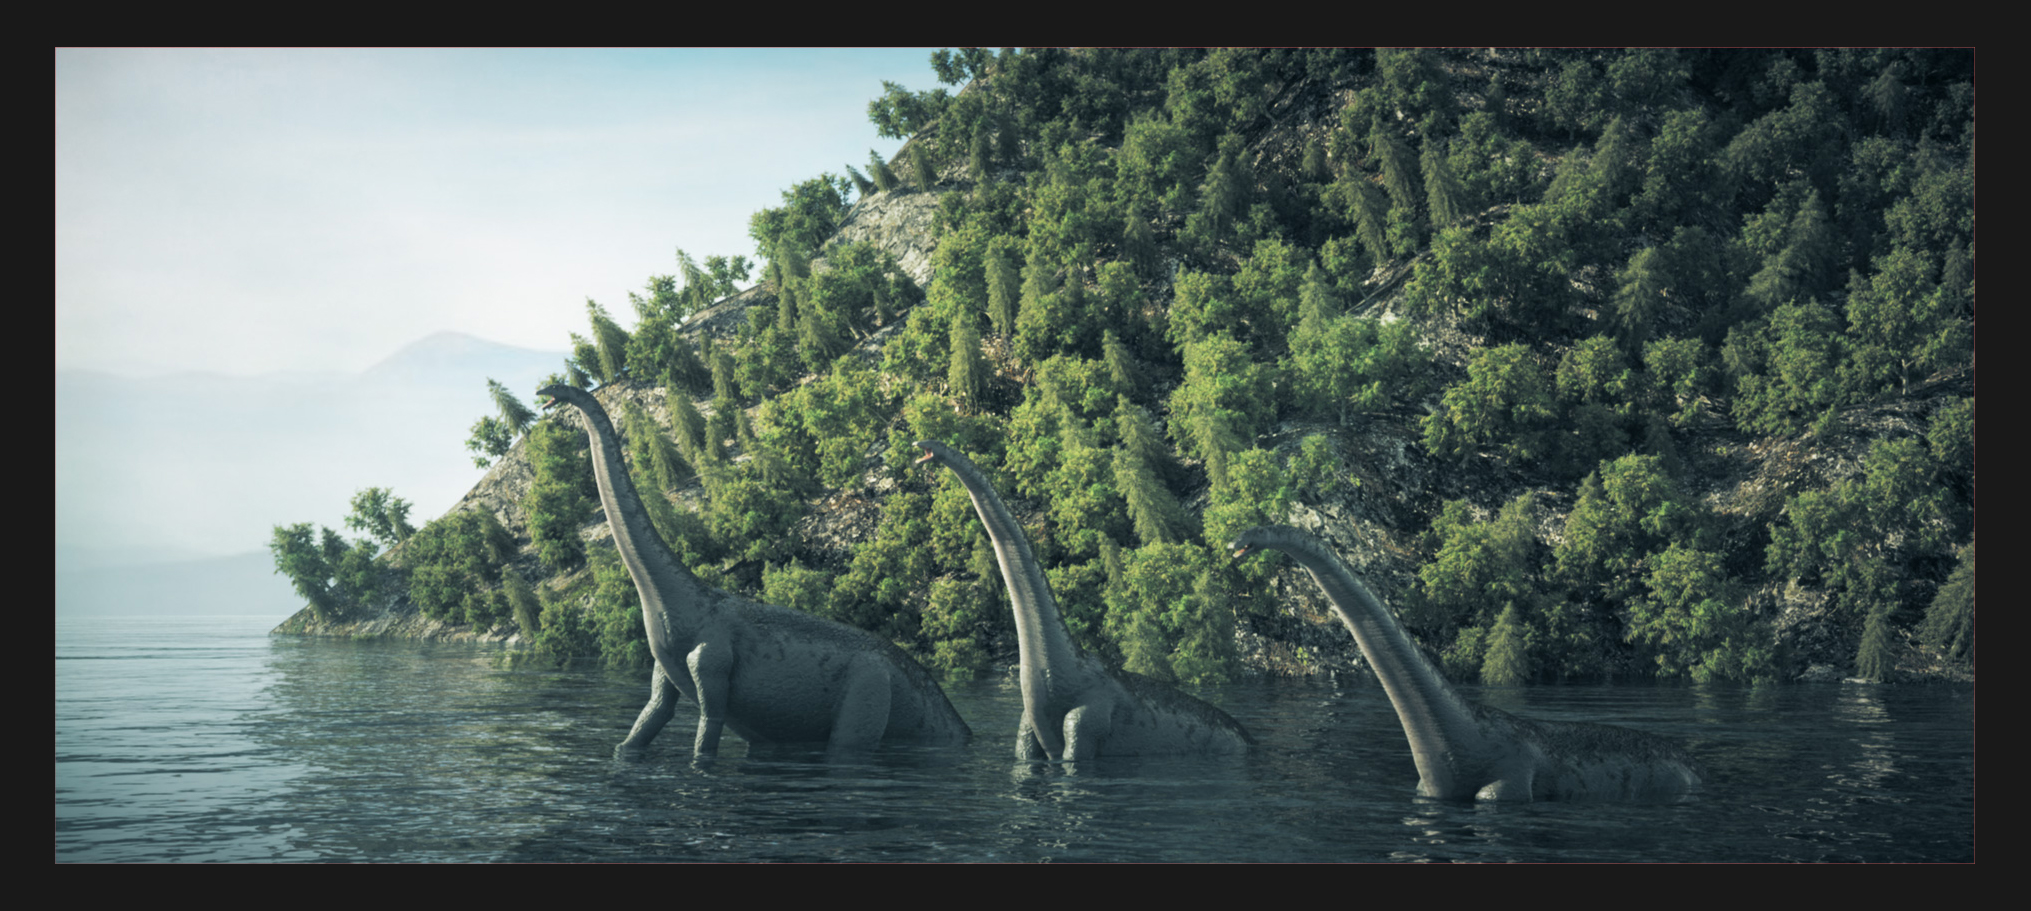 渲染器 : octance软件:cinema 4d灵感来自侏罗纪公园恐龙时代广州